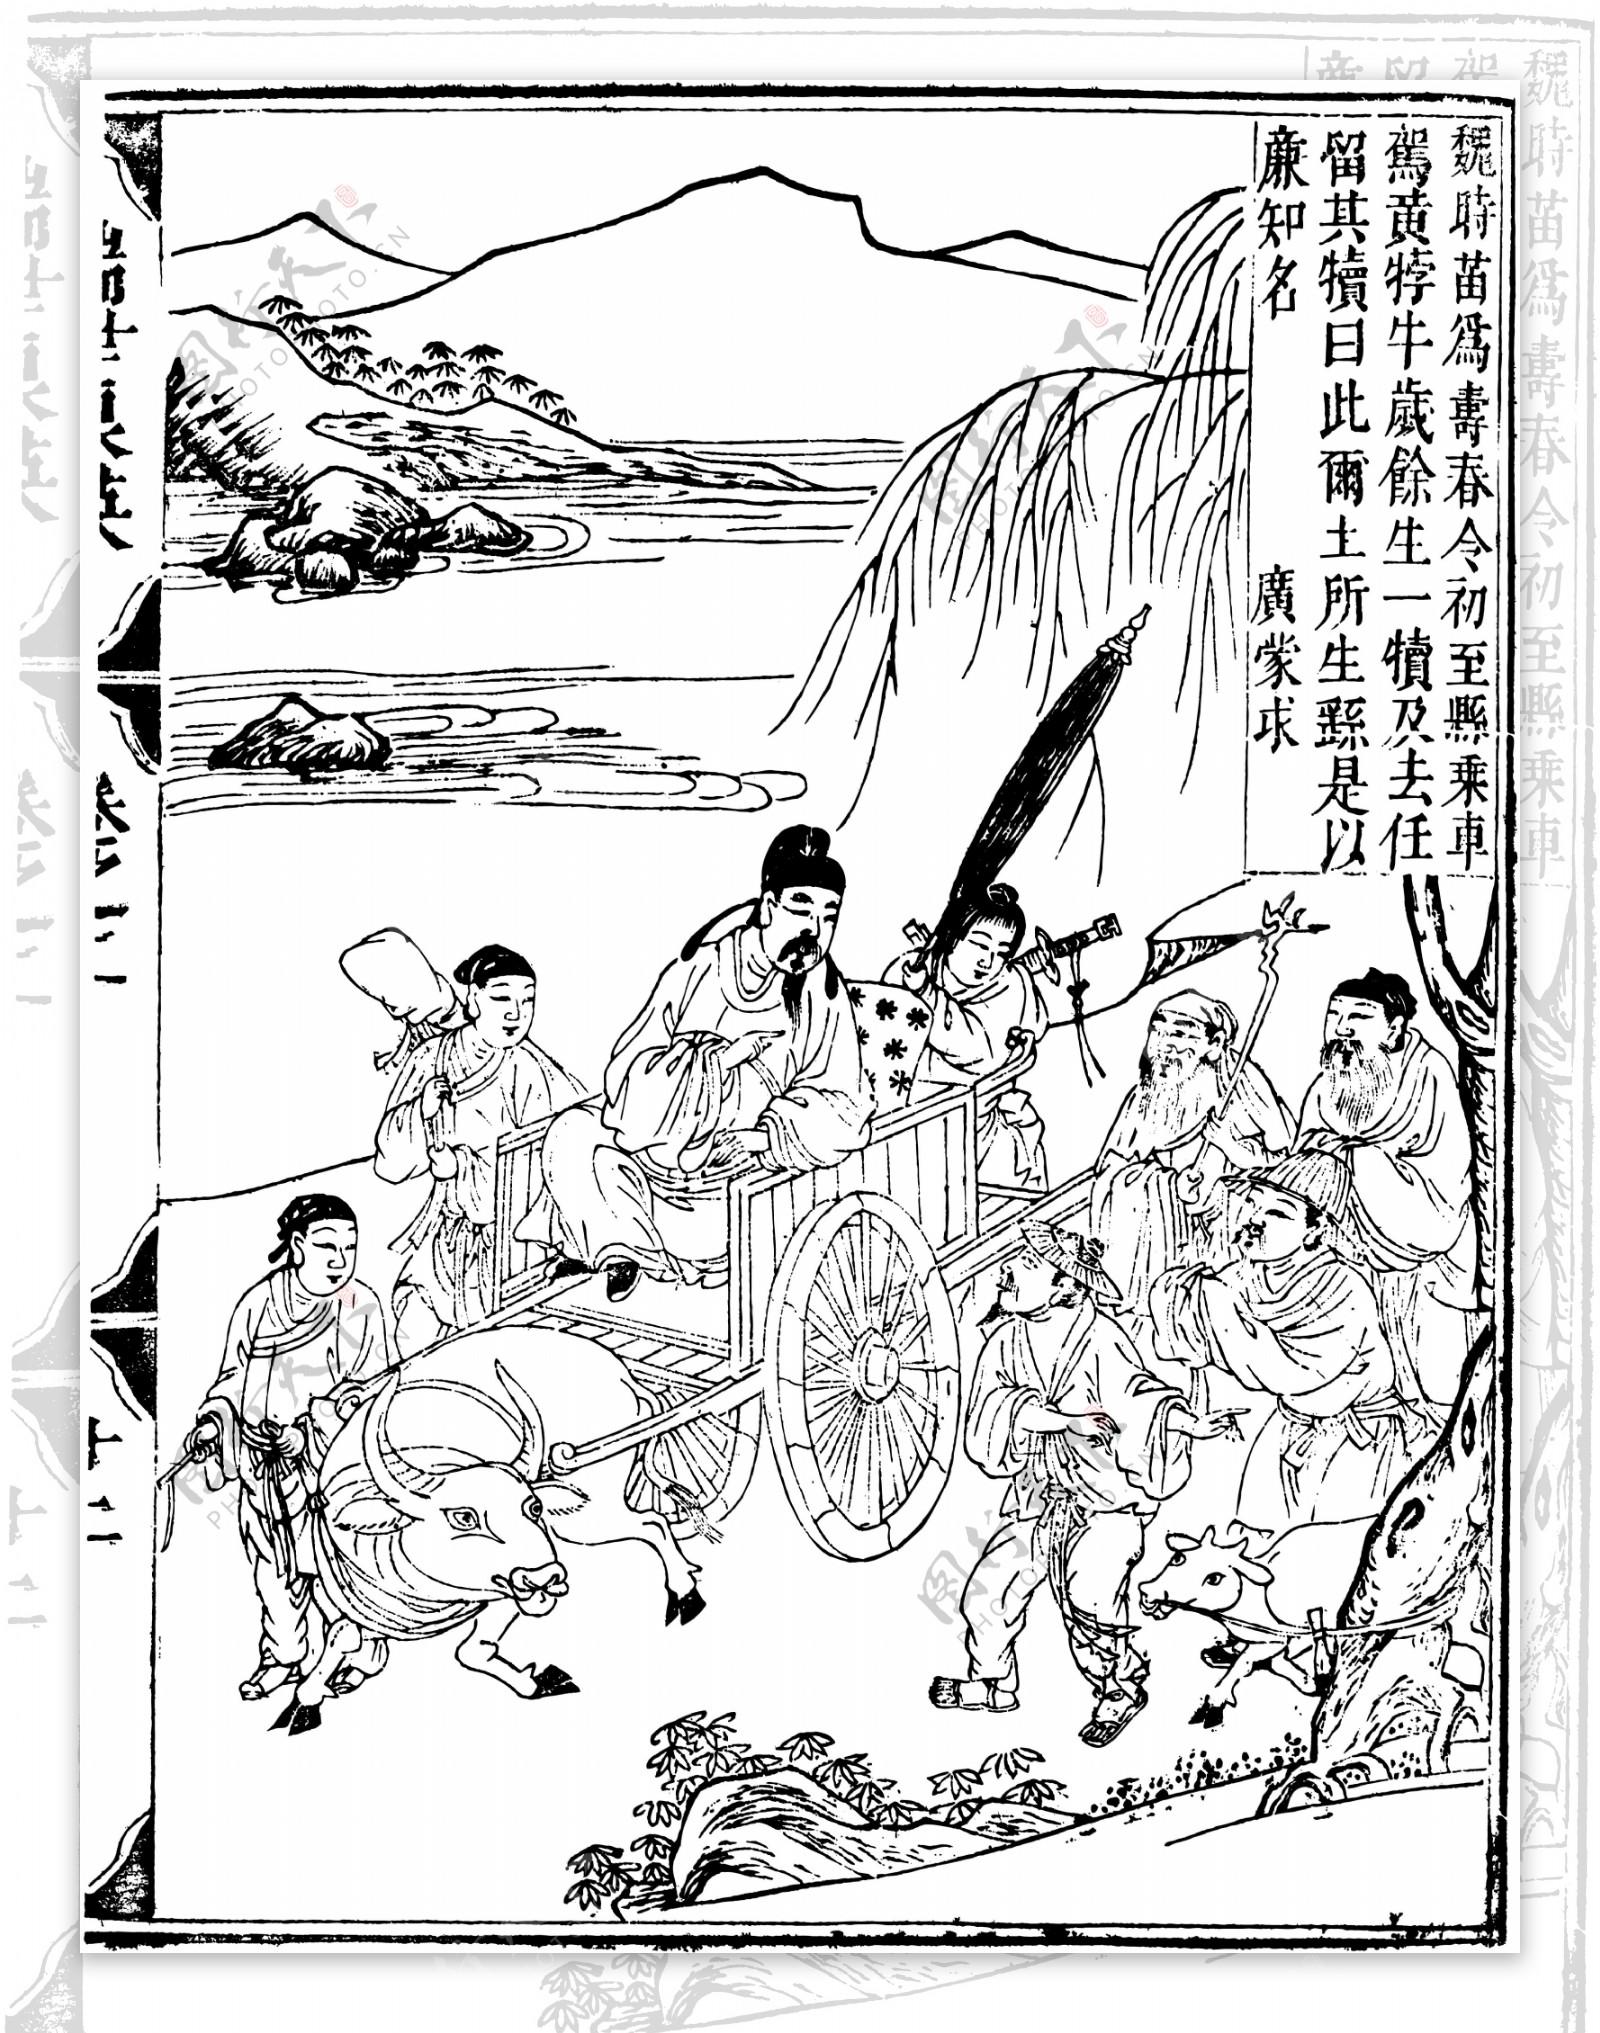 瑞世良英木刻版画中国传统文化85